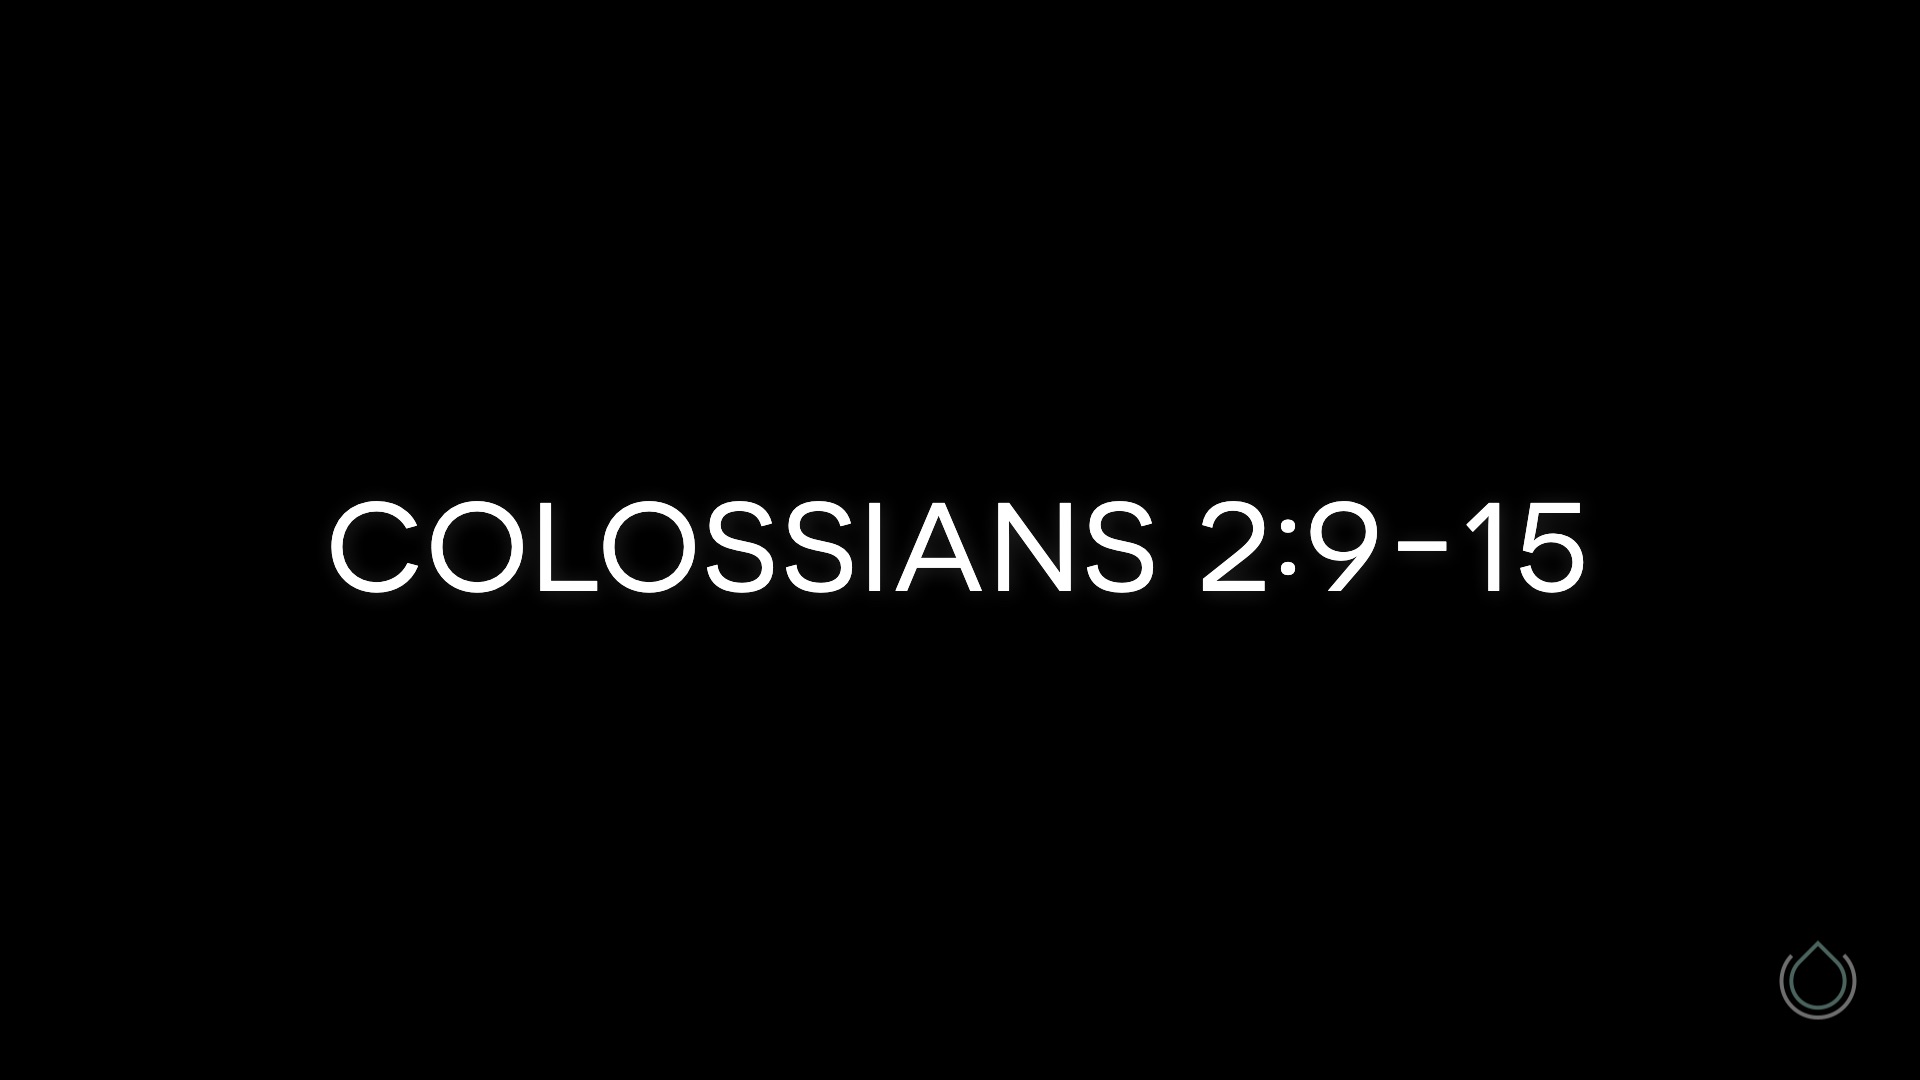 Colossians 2:9-15